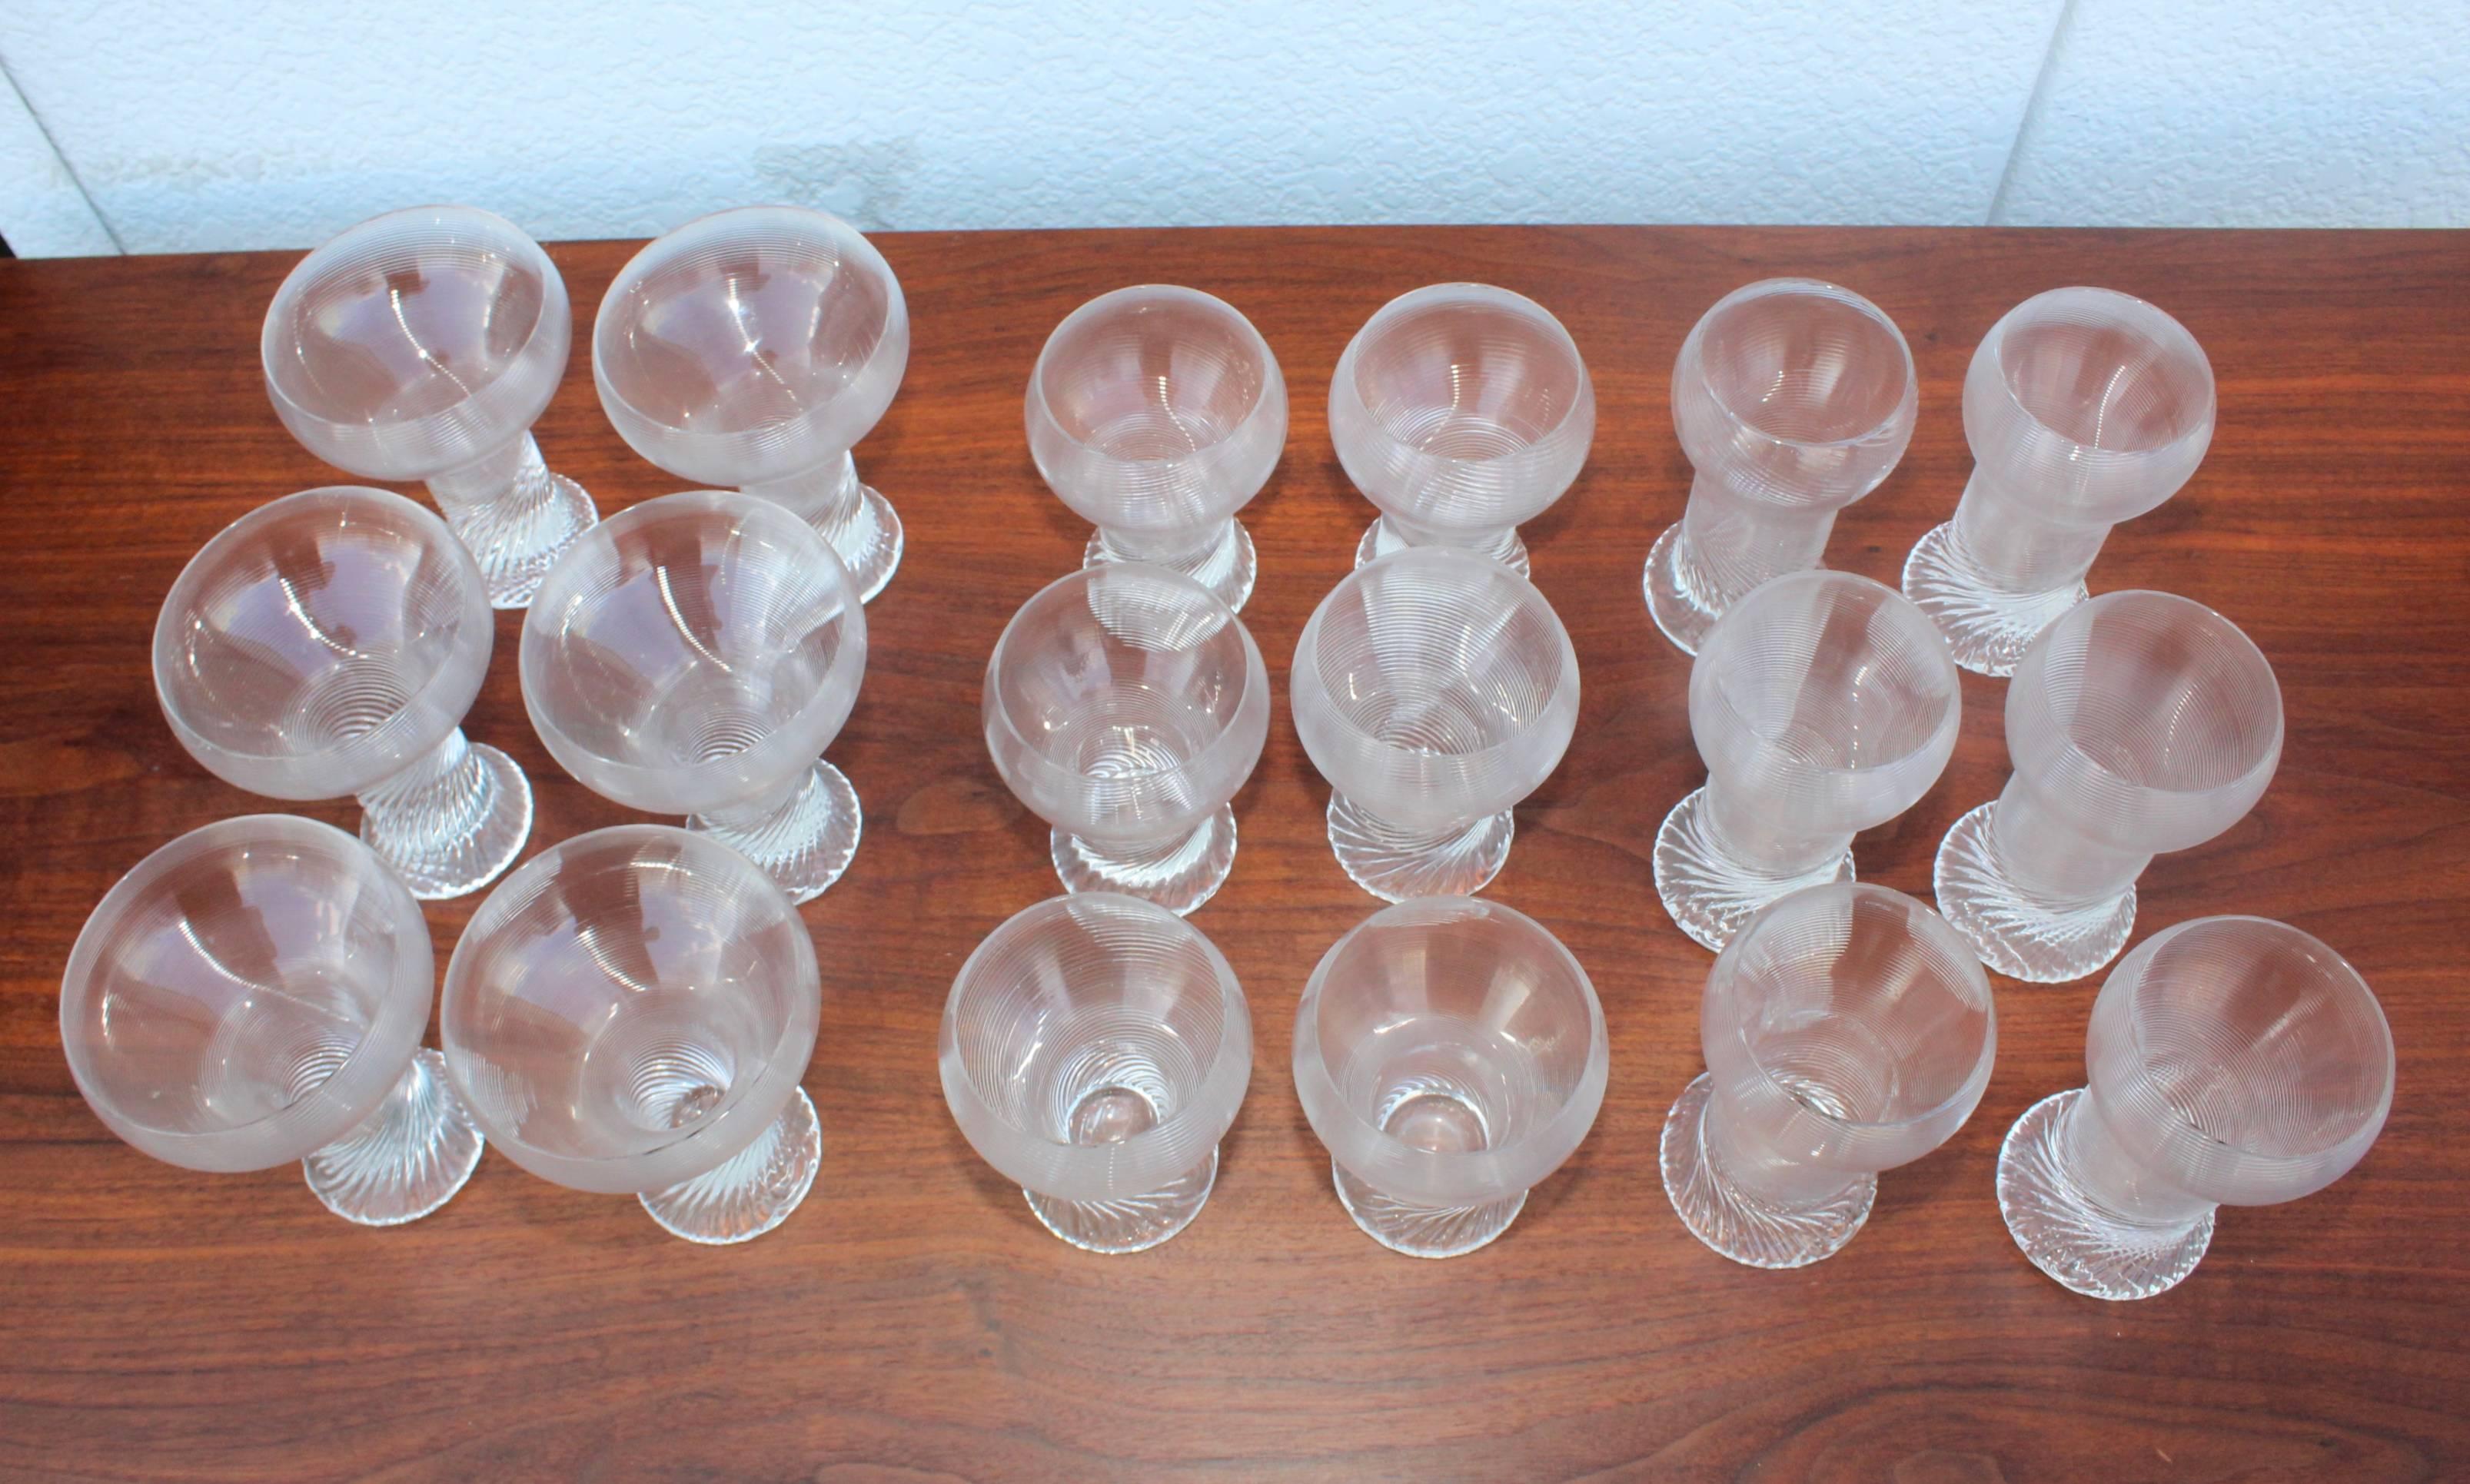 Ensemble de 18 verres en forme de tourbillon moderne des années 1970 par Rosenthal Studio.

Mesure : lunettes moyennes hauteur 5,5 diamètre 3,25
petits verres hauteur 4,75, diamètre 3,5.